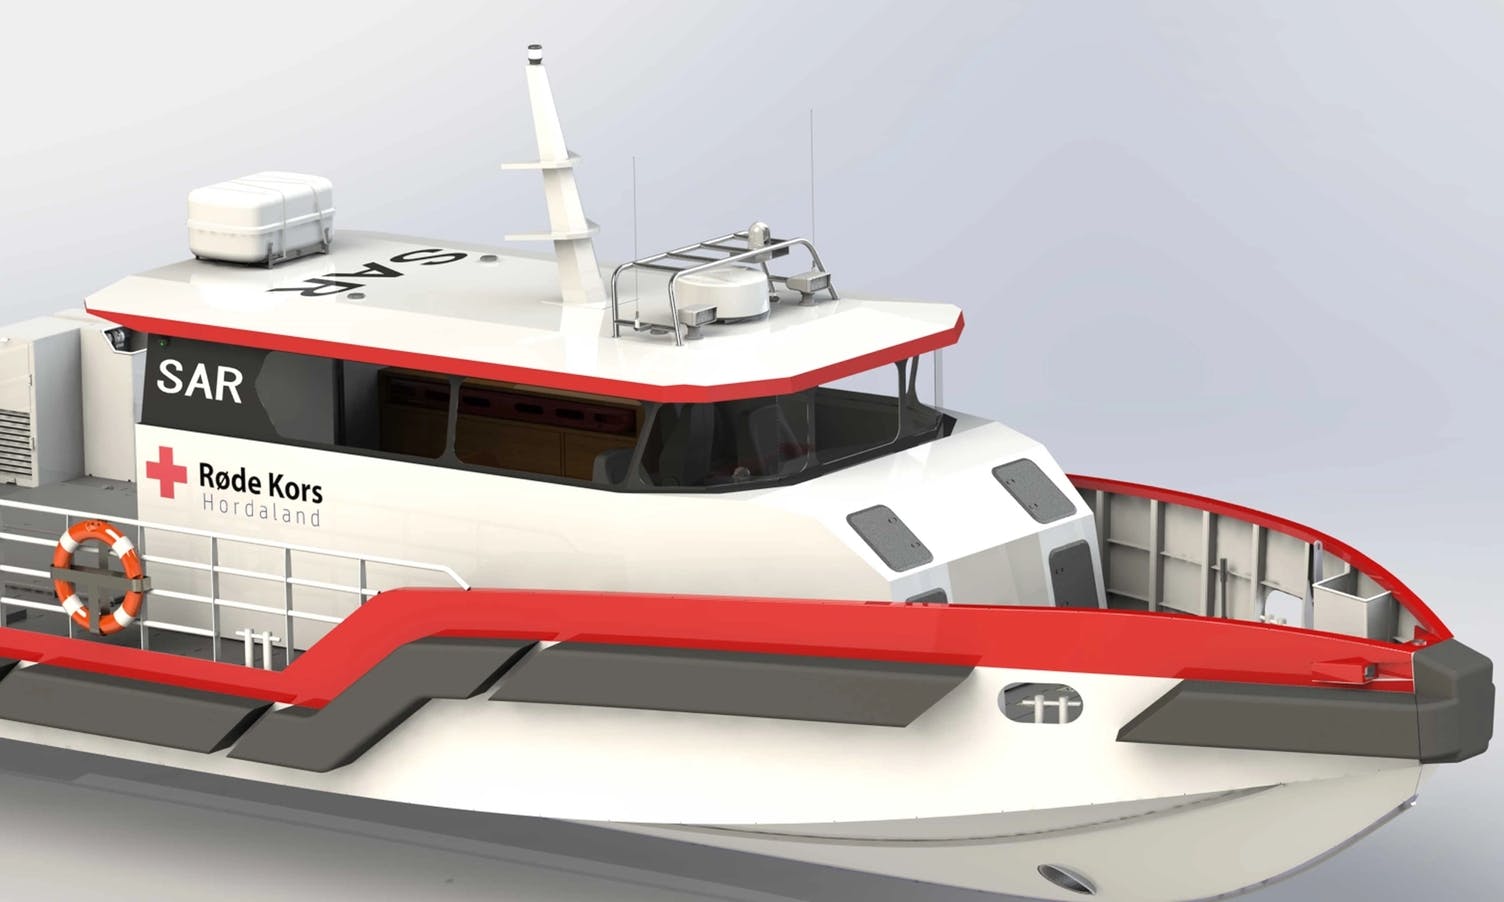 Med støtte frå åtte i Os: Ny Røde Kors-båt er under bygging